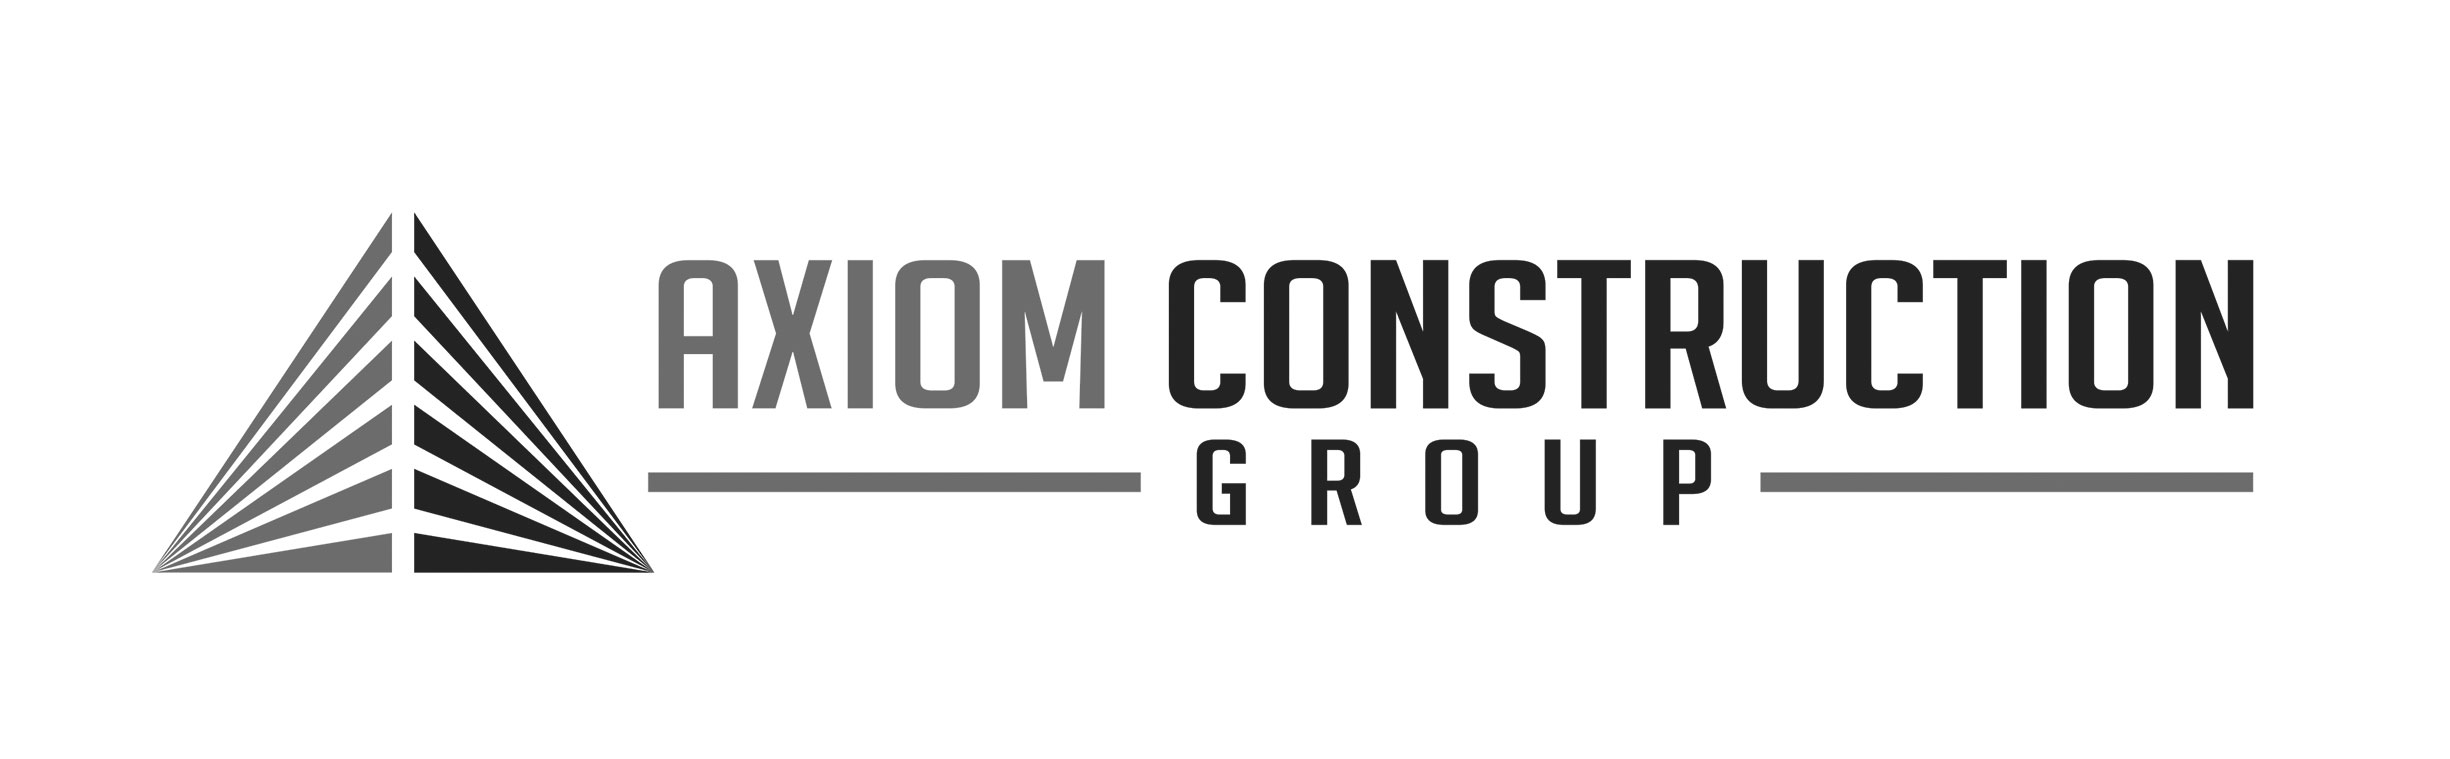 Axiom Construction Group